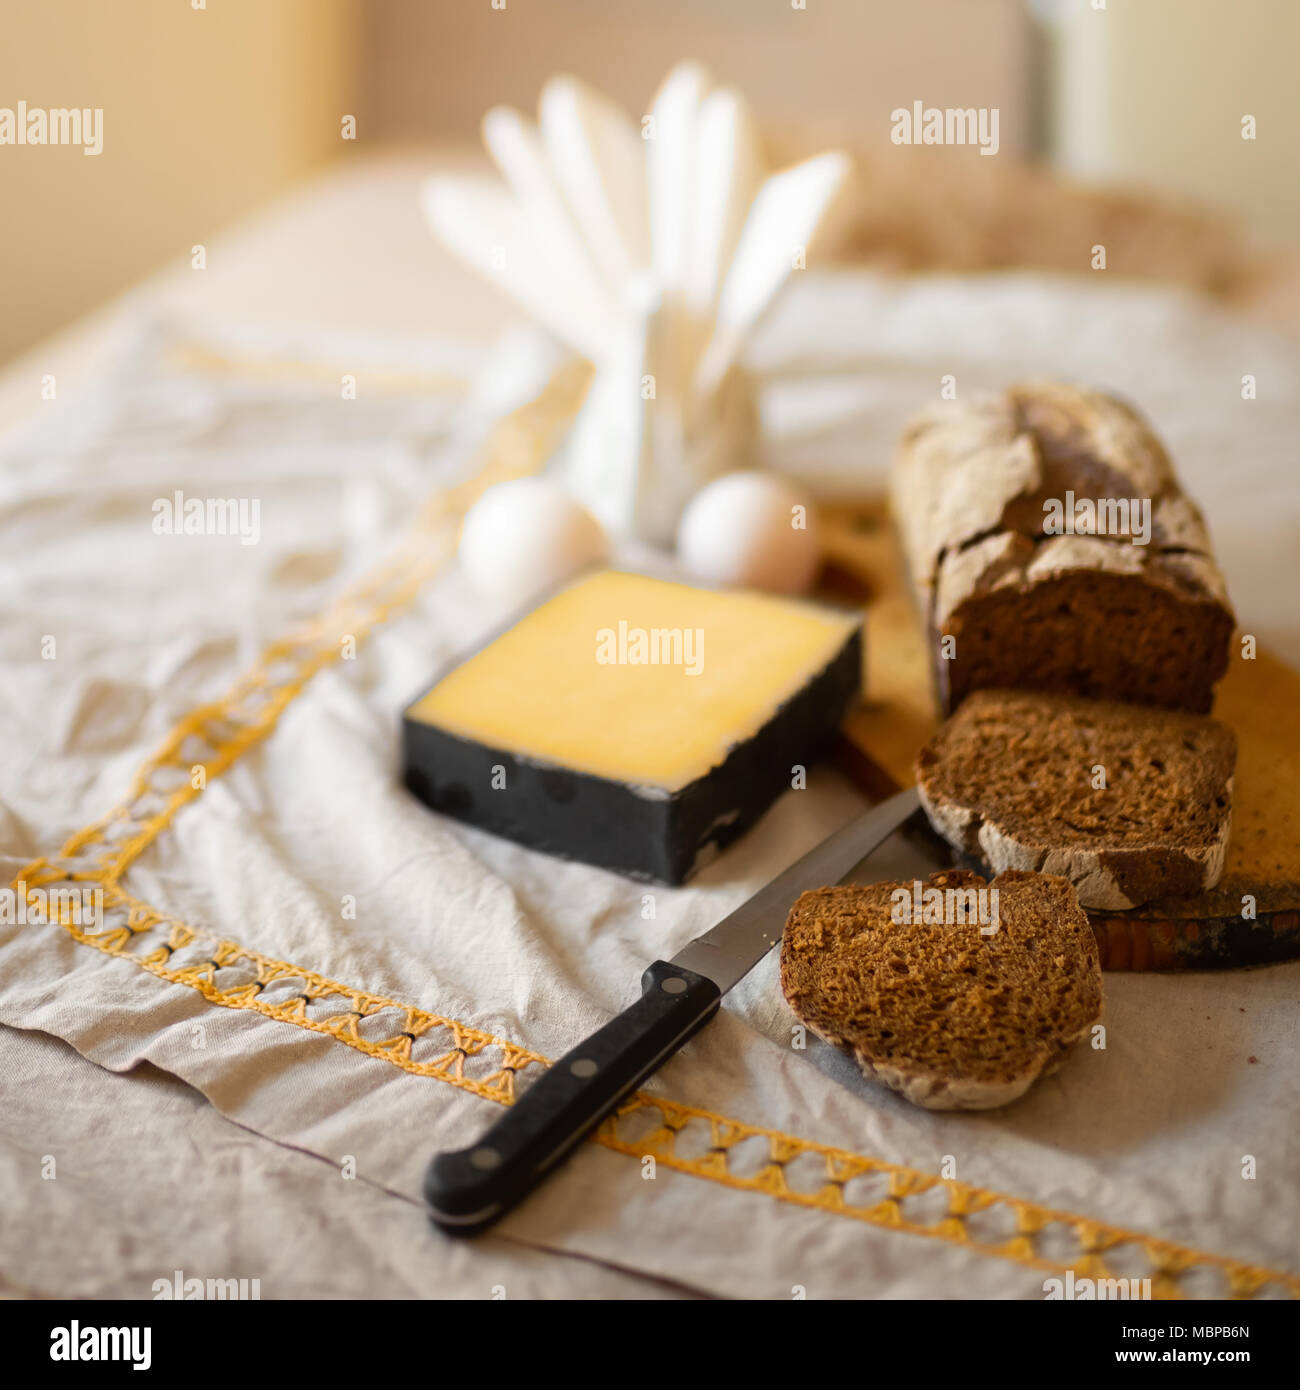 Ein Laib Brot mit in Scheiben geschnittenen Stücke auf einem Schneidebrett mit Messer, eine Scheibe Käse und Eier liegen auf einem Tisch mit einem Bettwäsche licht Tischdecke Stockfoto